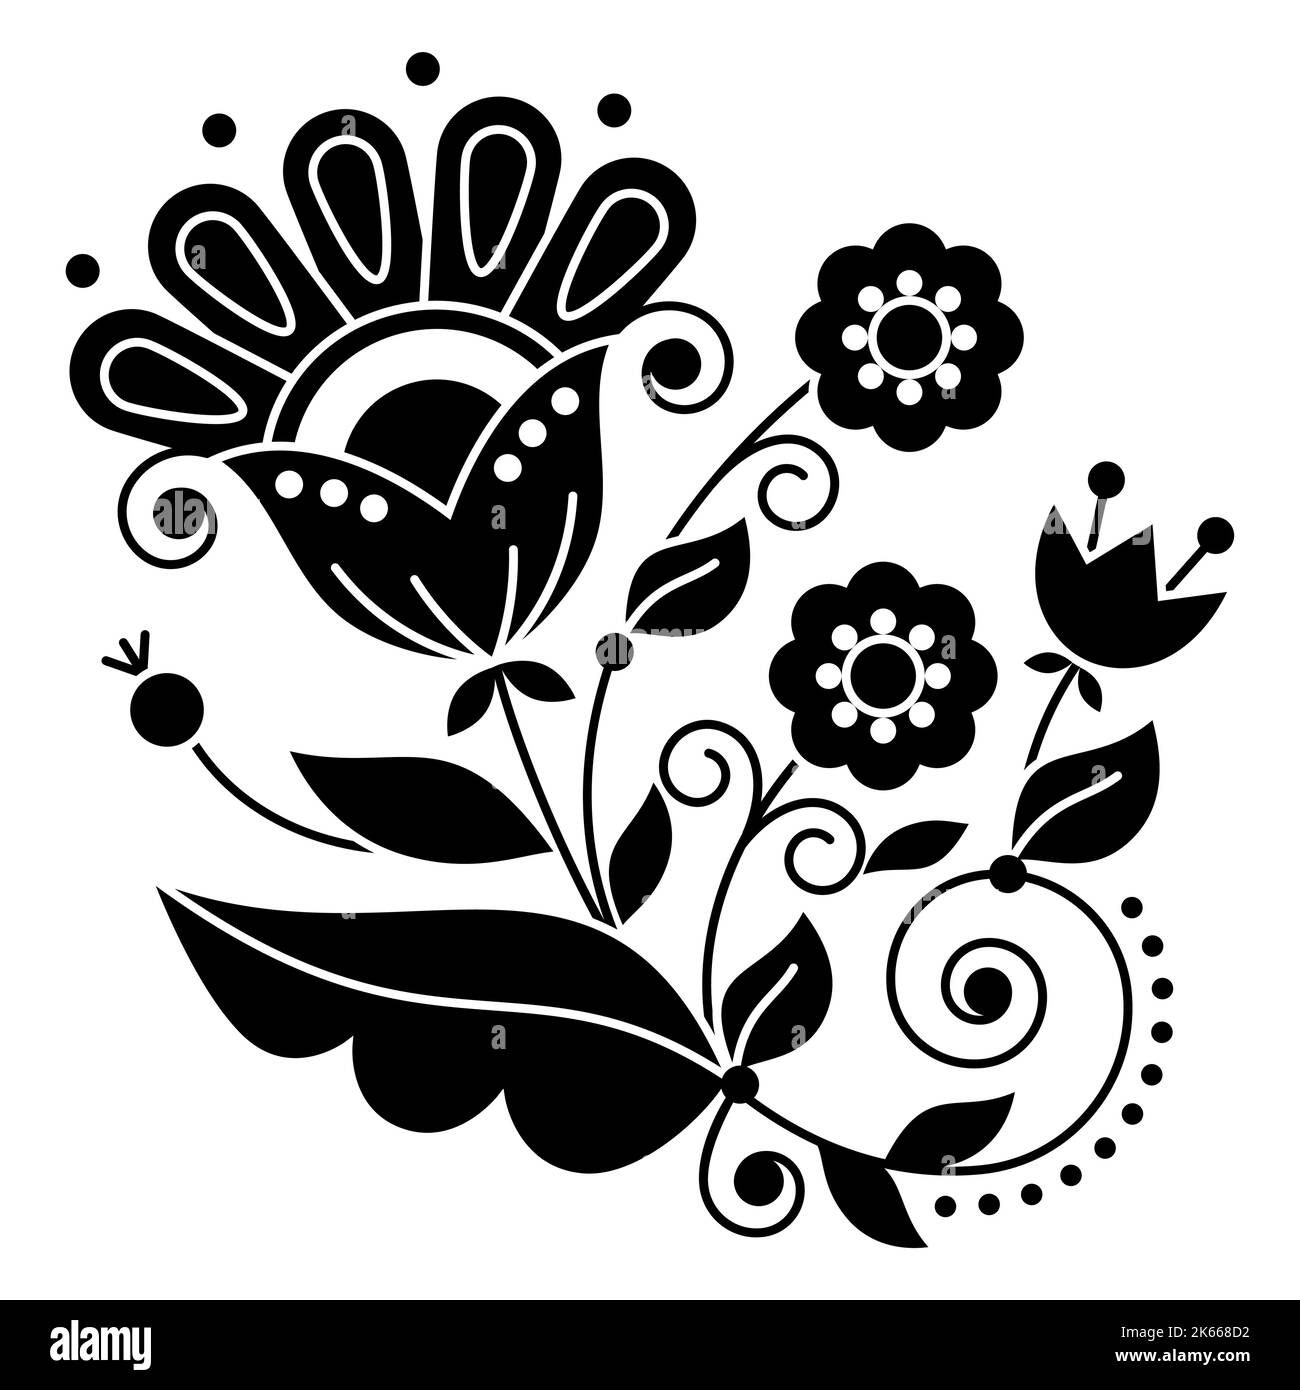 Florales Folk Art Vektor-Design inspiriert von traditionellen Stickereien aus Schweden, skandinavische Retro-Dekoration mit schwarzen und weißen Blumen, SWI Stock Vektor